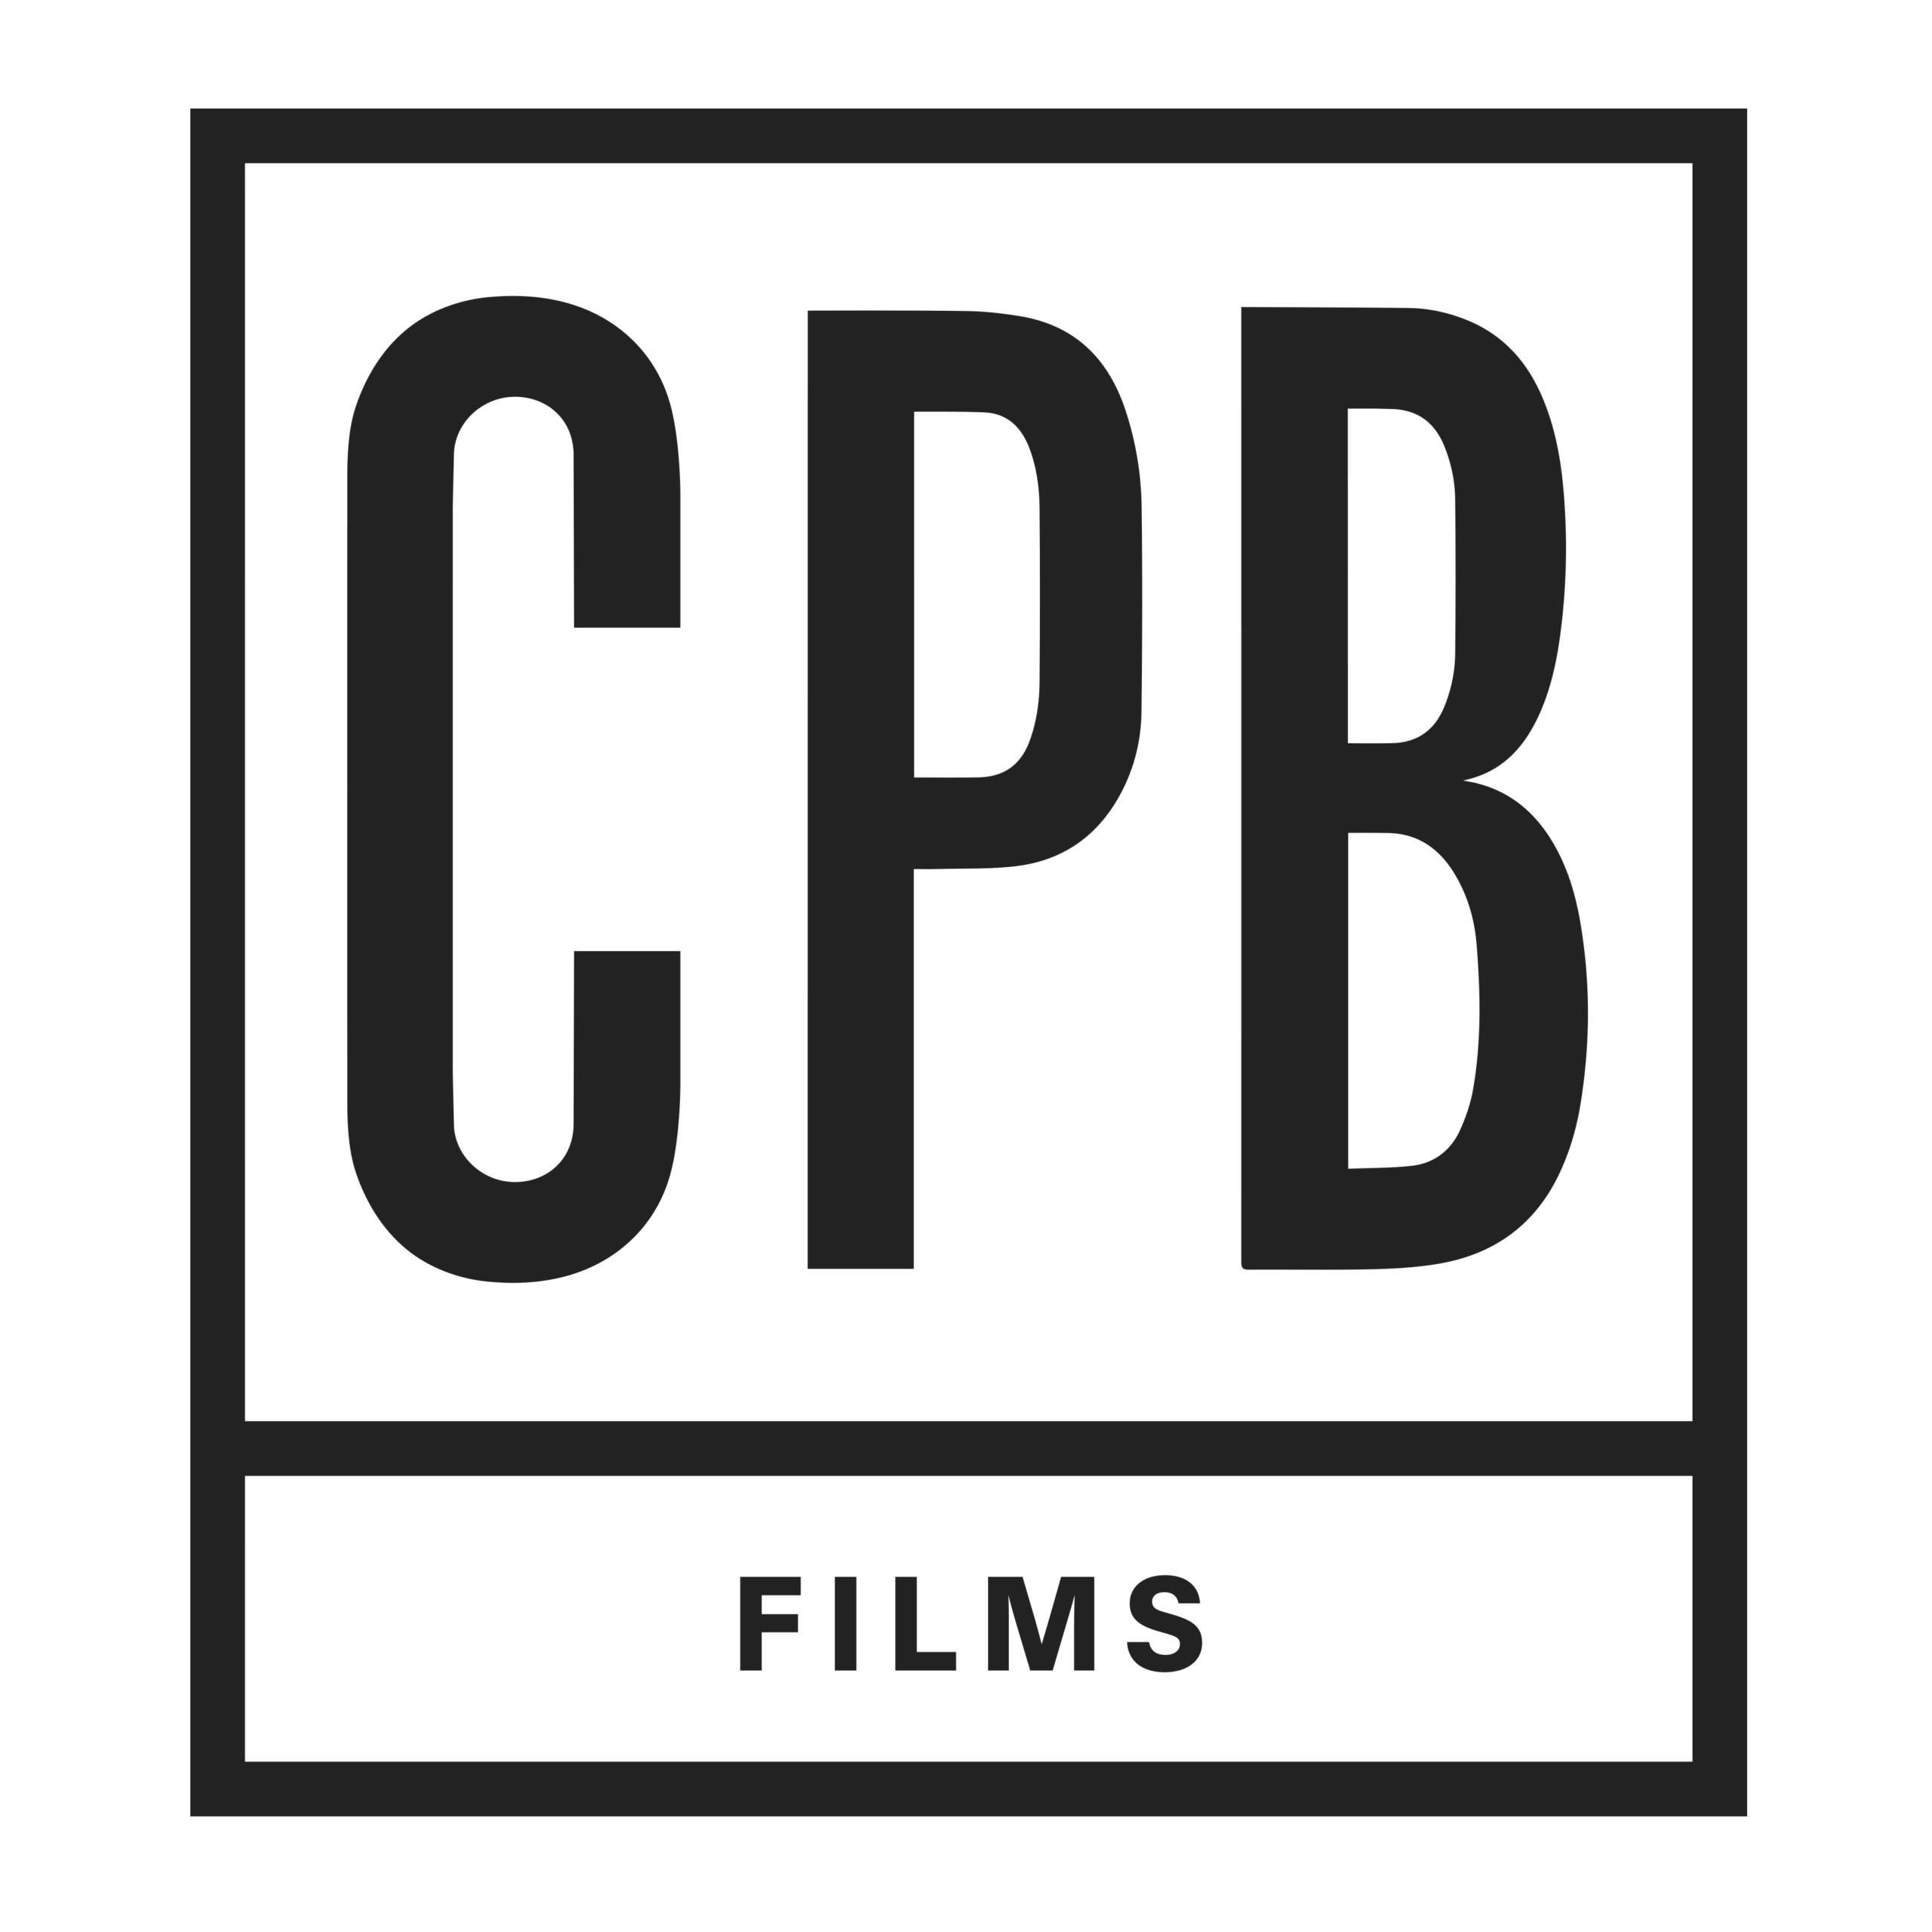 CPB FILMS